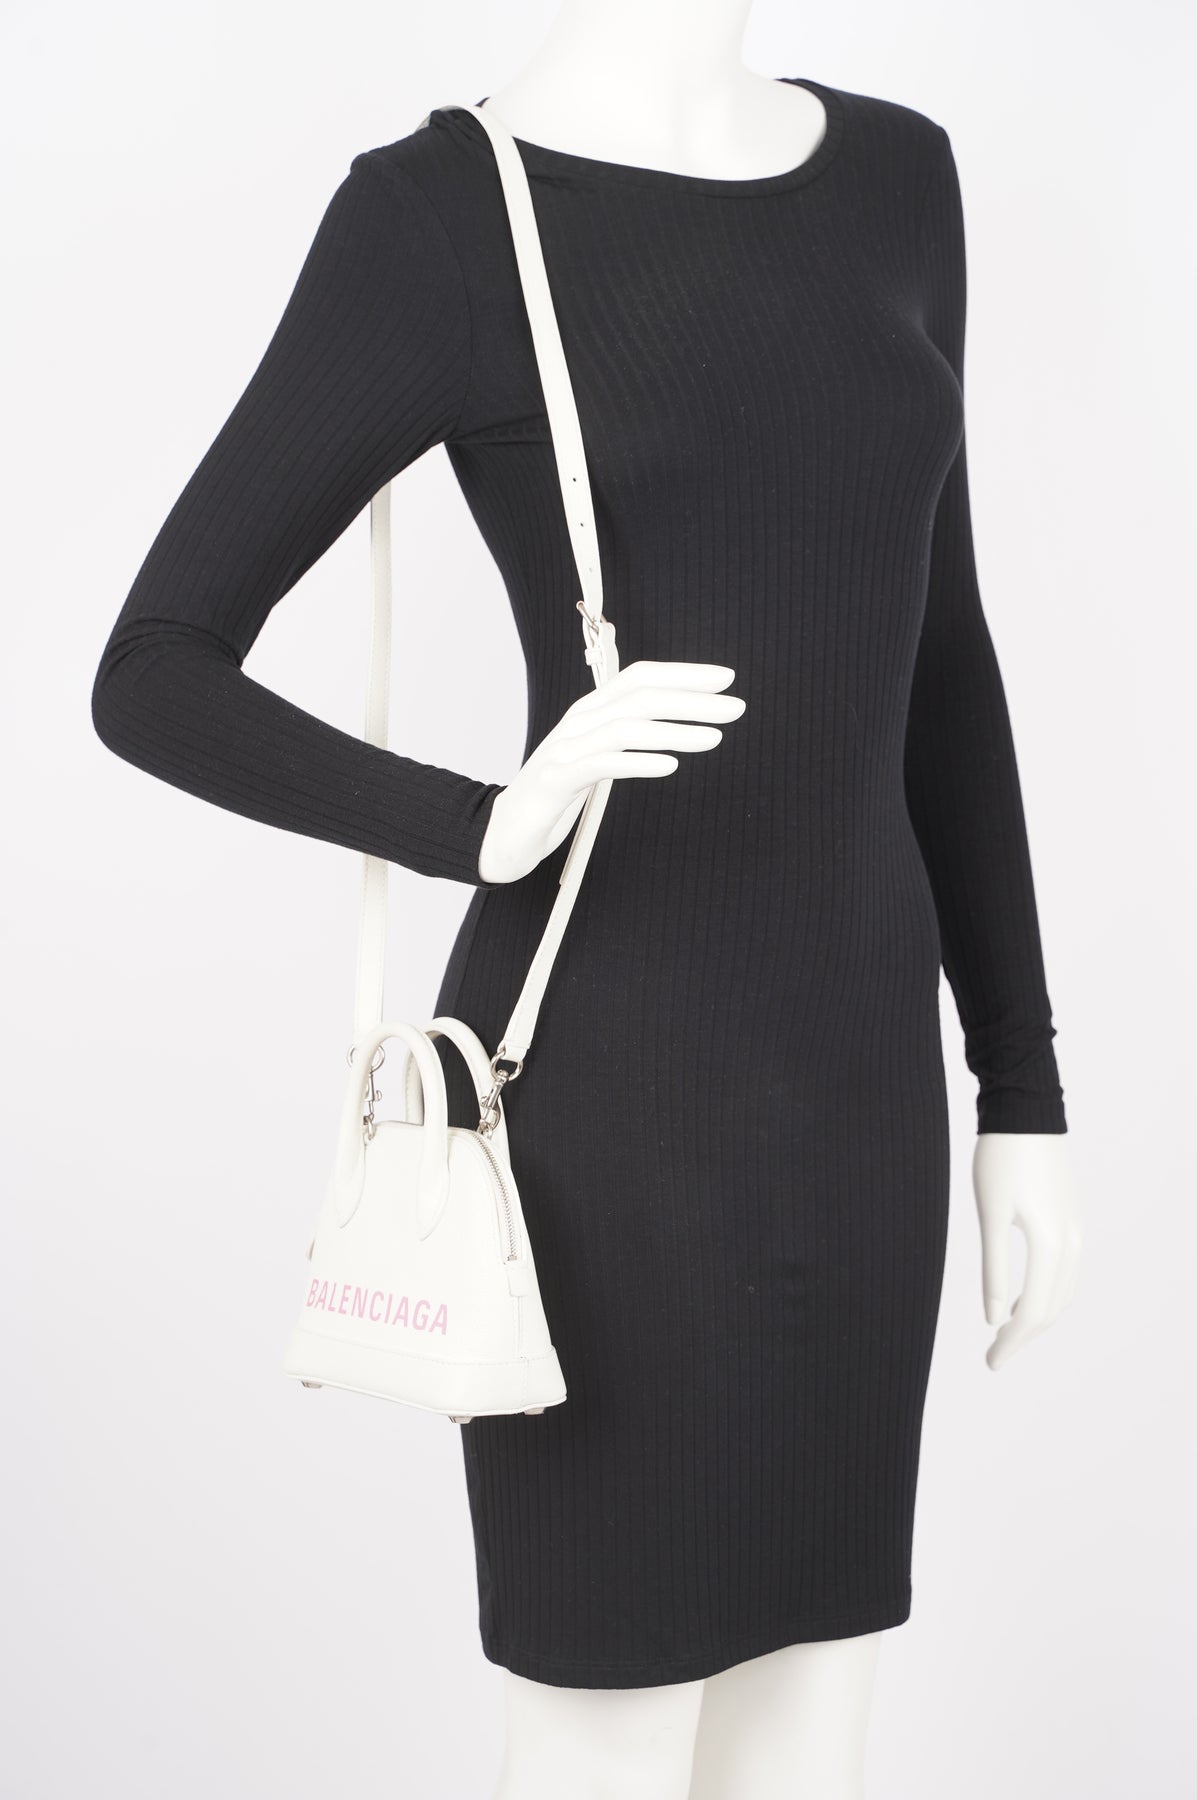 Balenciaga Ville Xxs Top Handle Bag in Pink